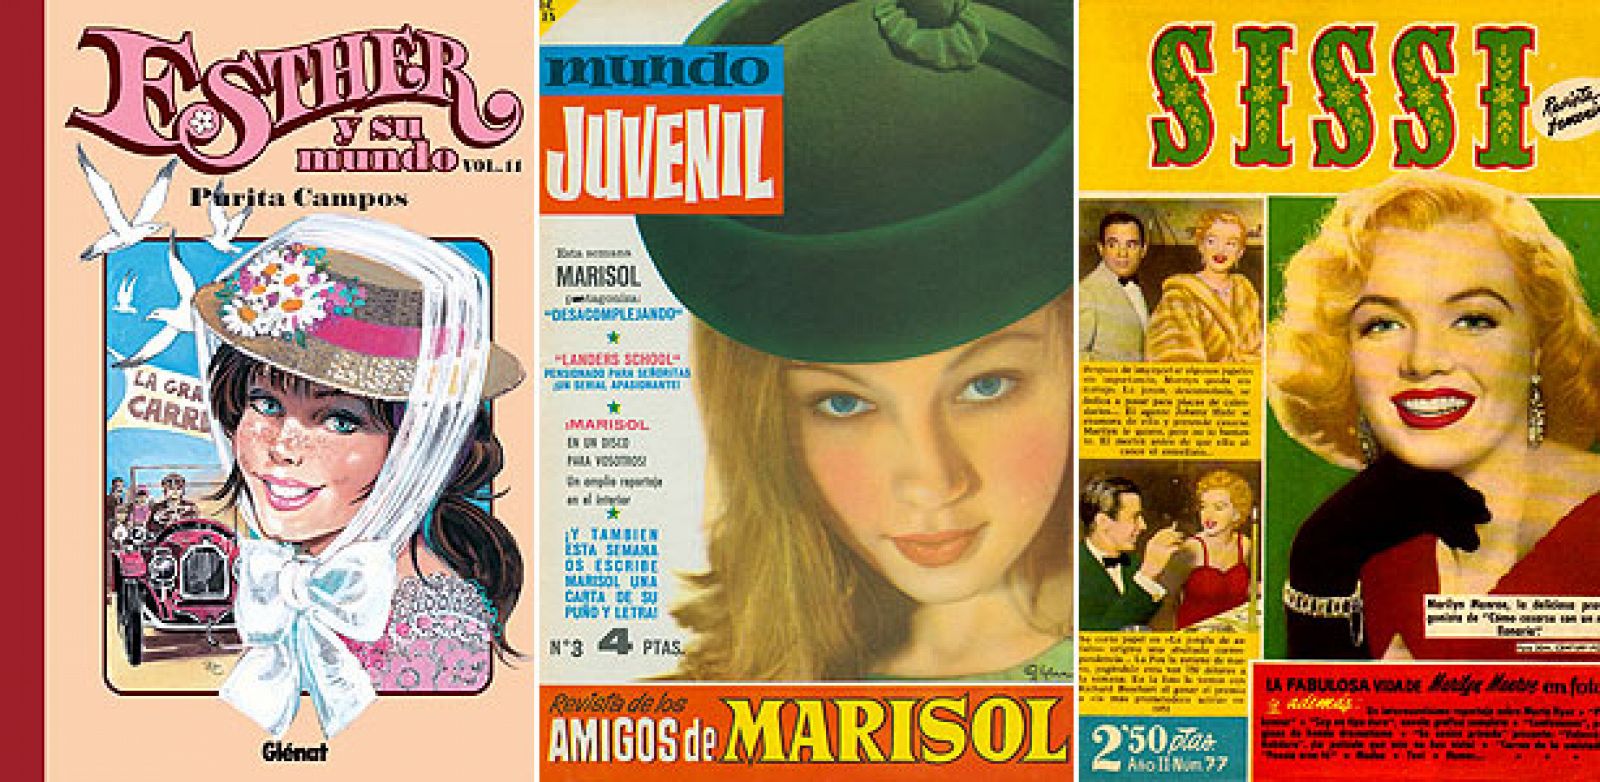 Portadas de 'Esther y su mundo', 'Mundo juvenil' y 'Sissi', tres clásicos de las revistas femeninas